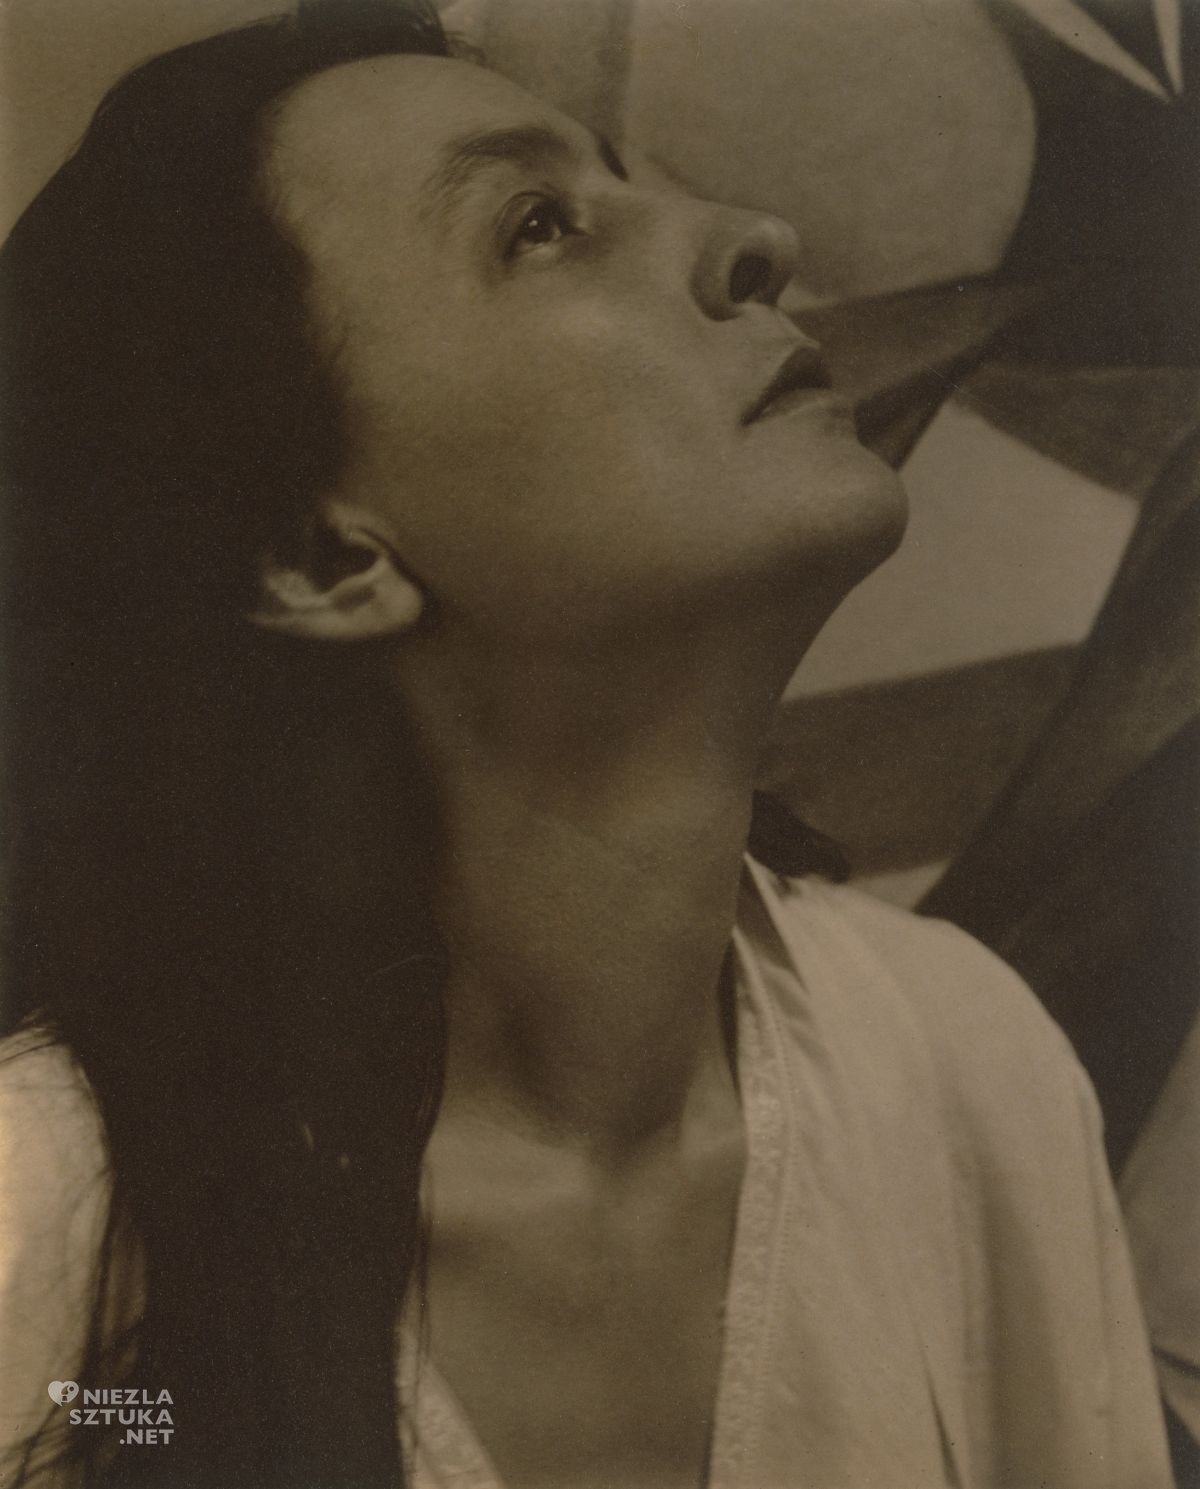 Alfred Stieglitz, Georgia O'Keeffe, odbitka platynowa, niezła sztuka